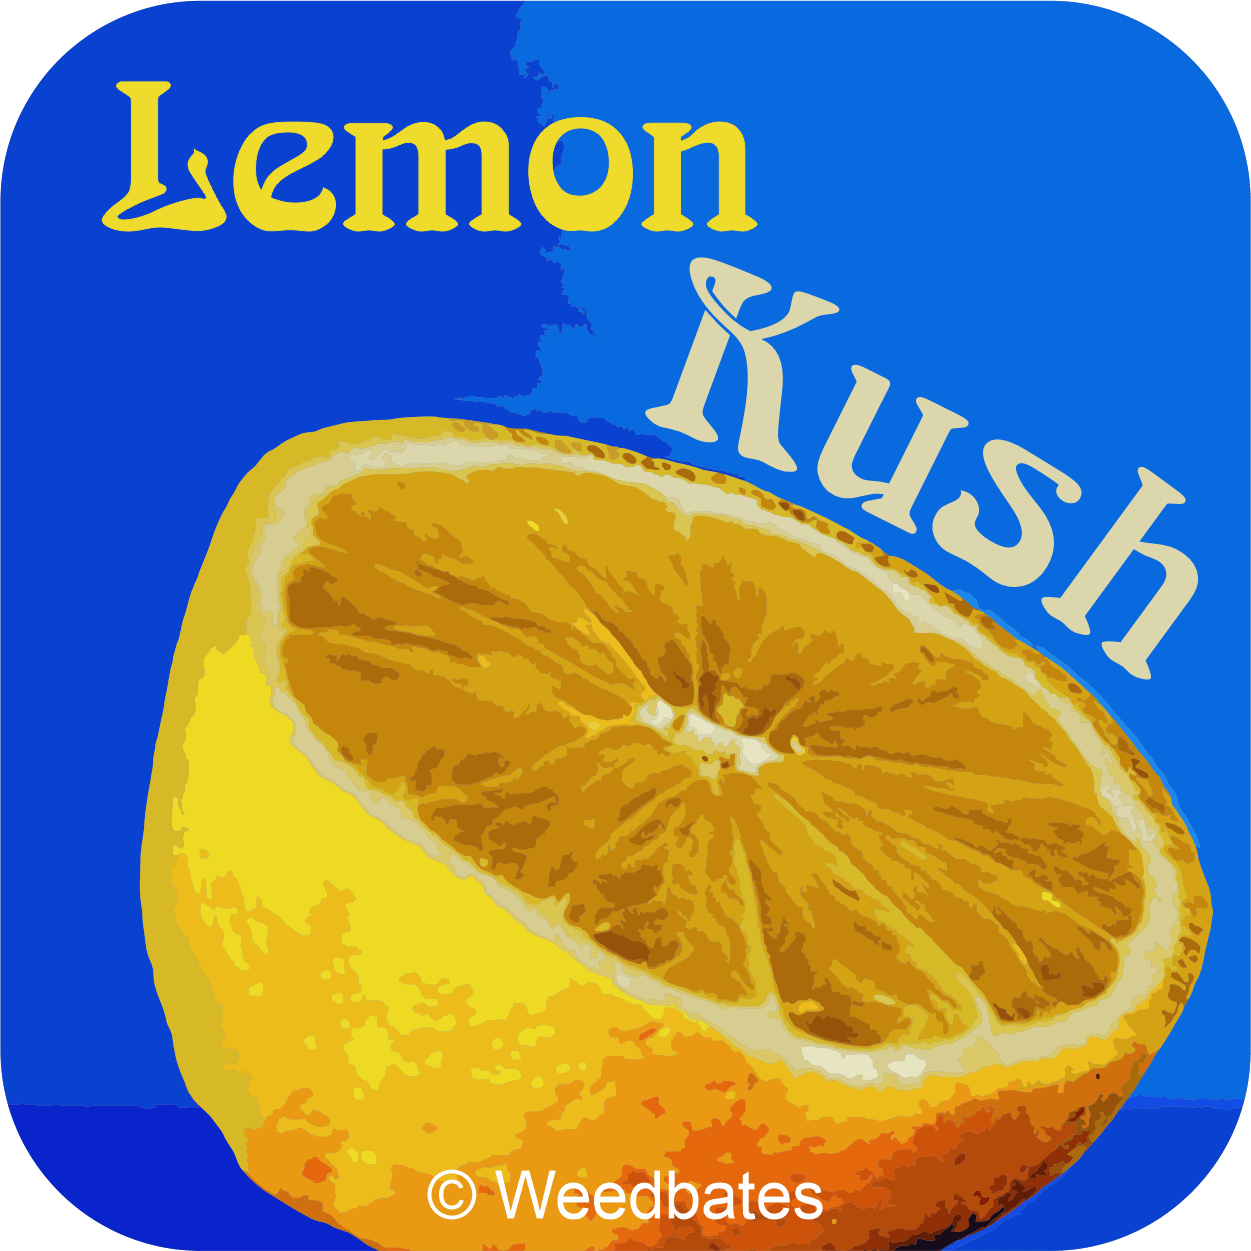 Lemon Kush cannabis strain